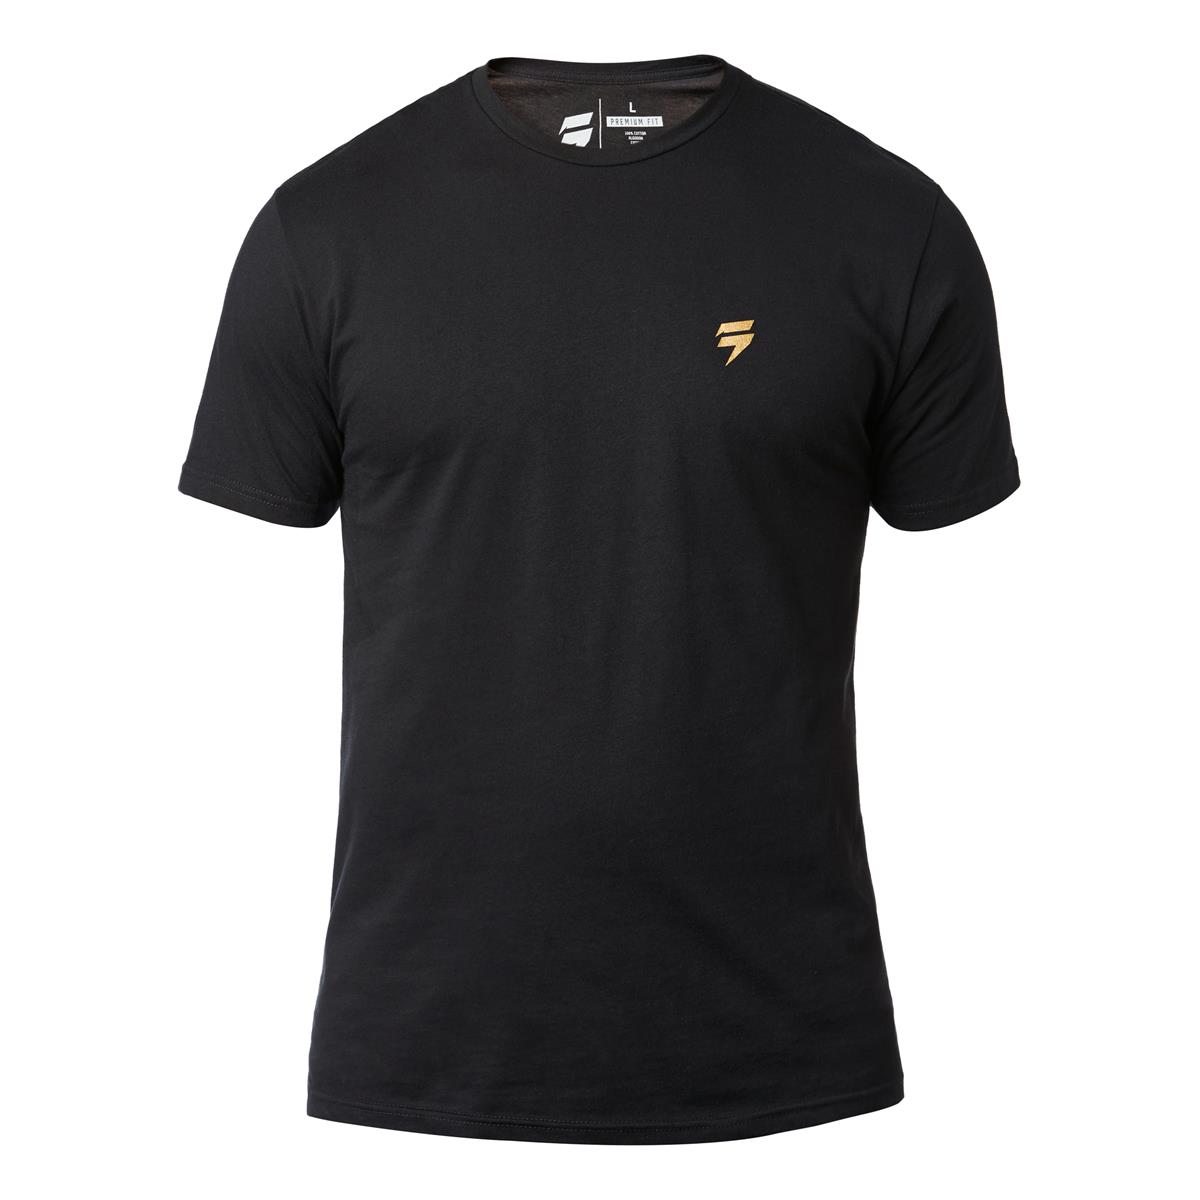 Shift T-Shirt 3lack Label Copa Black - Special Edition Muerte